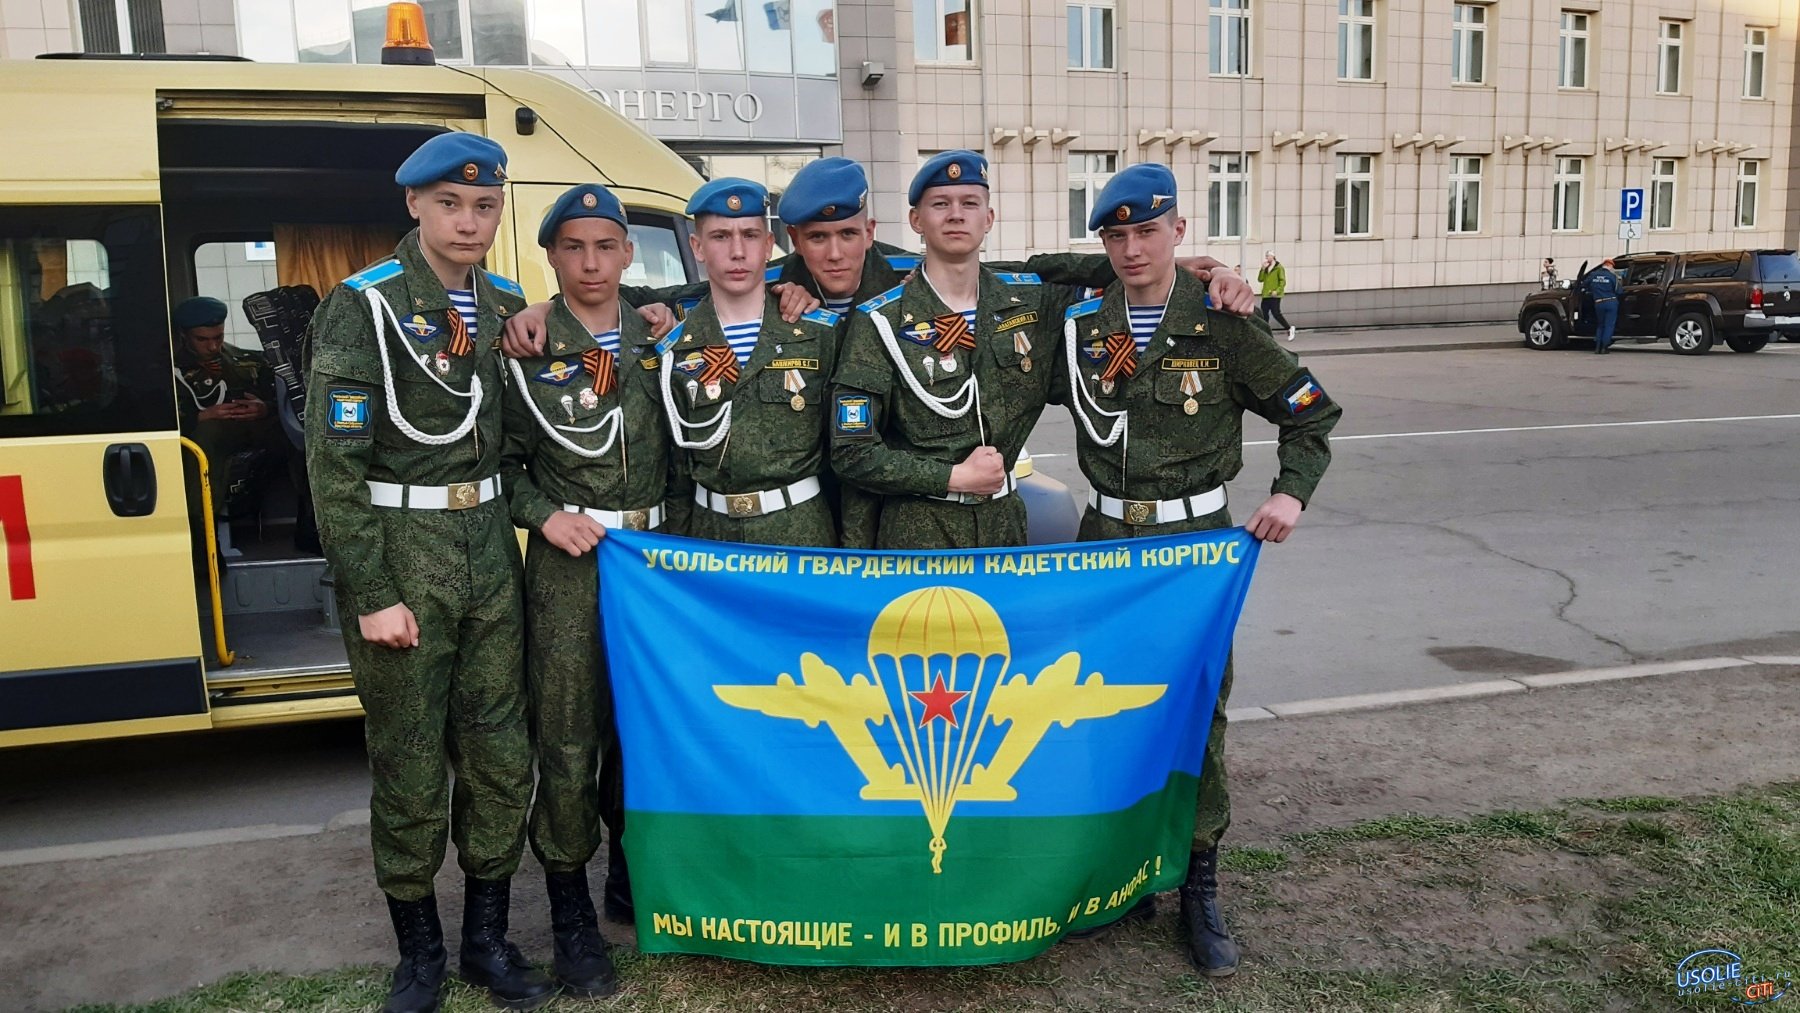 Усольские кадеты в составе парадного расчета в Иркутске